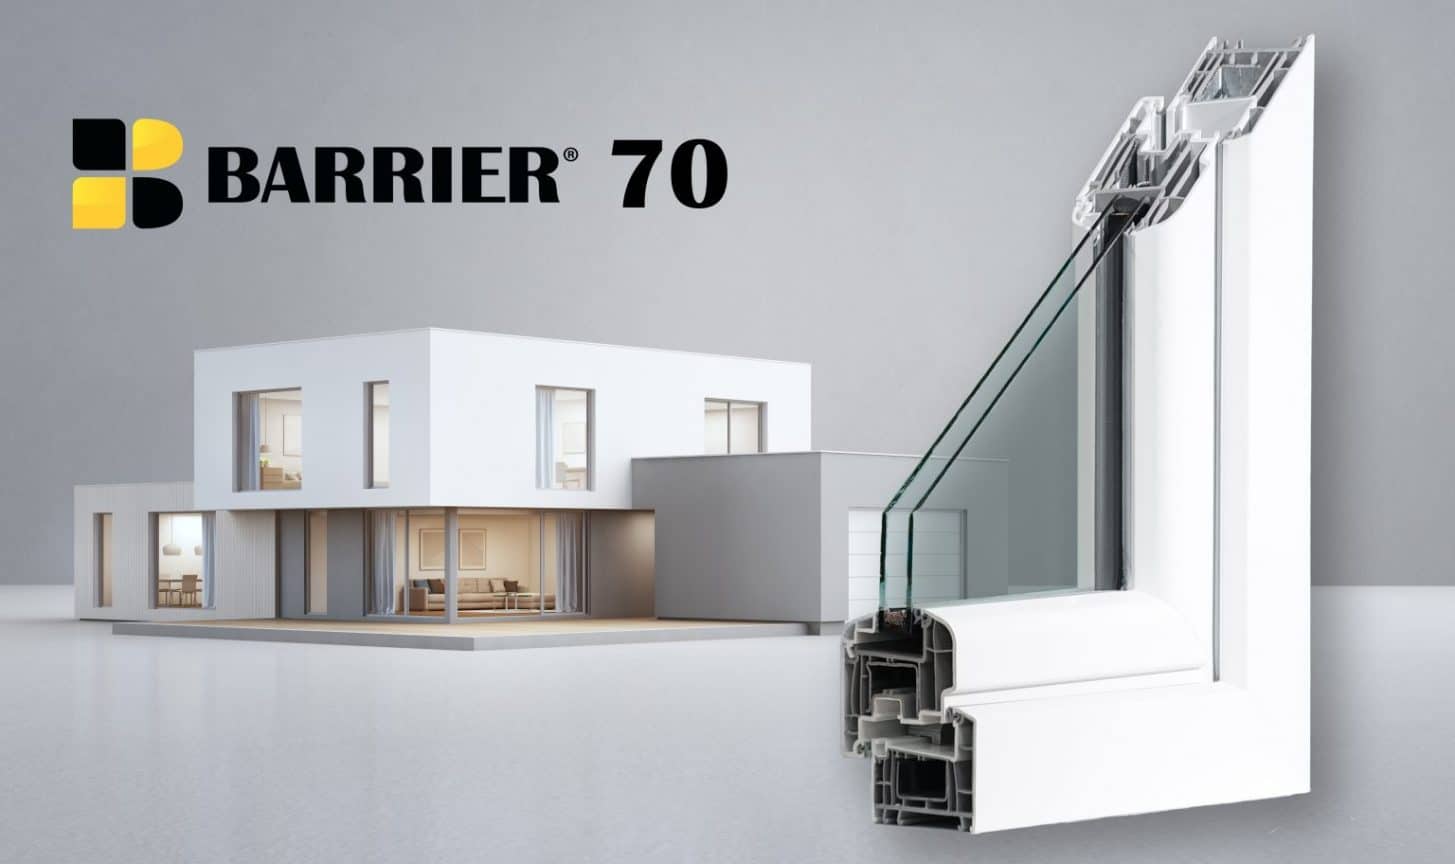 Barrier 70